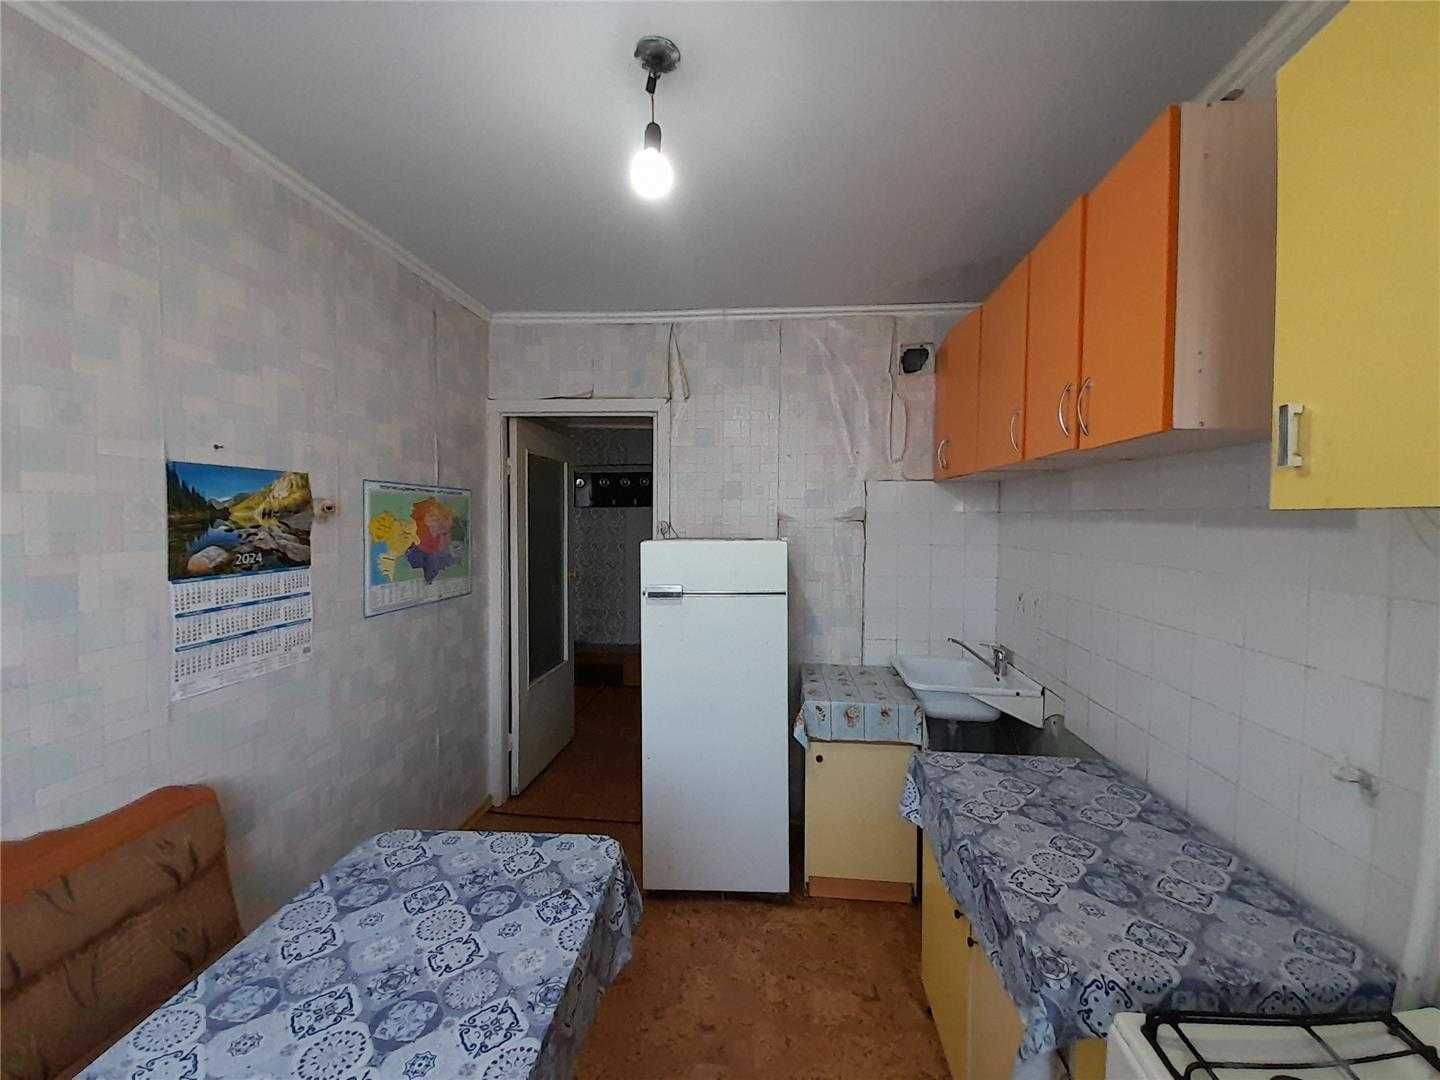 Продам 2 комн квартиру улучшенной планировки по пр Металлургов